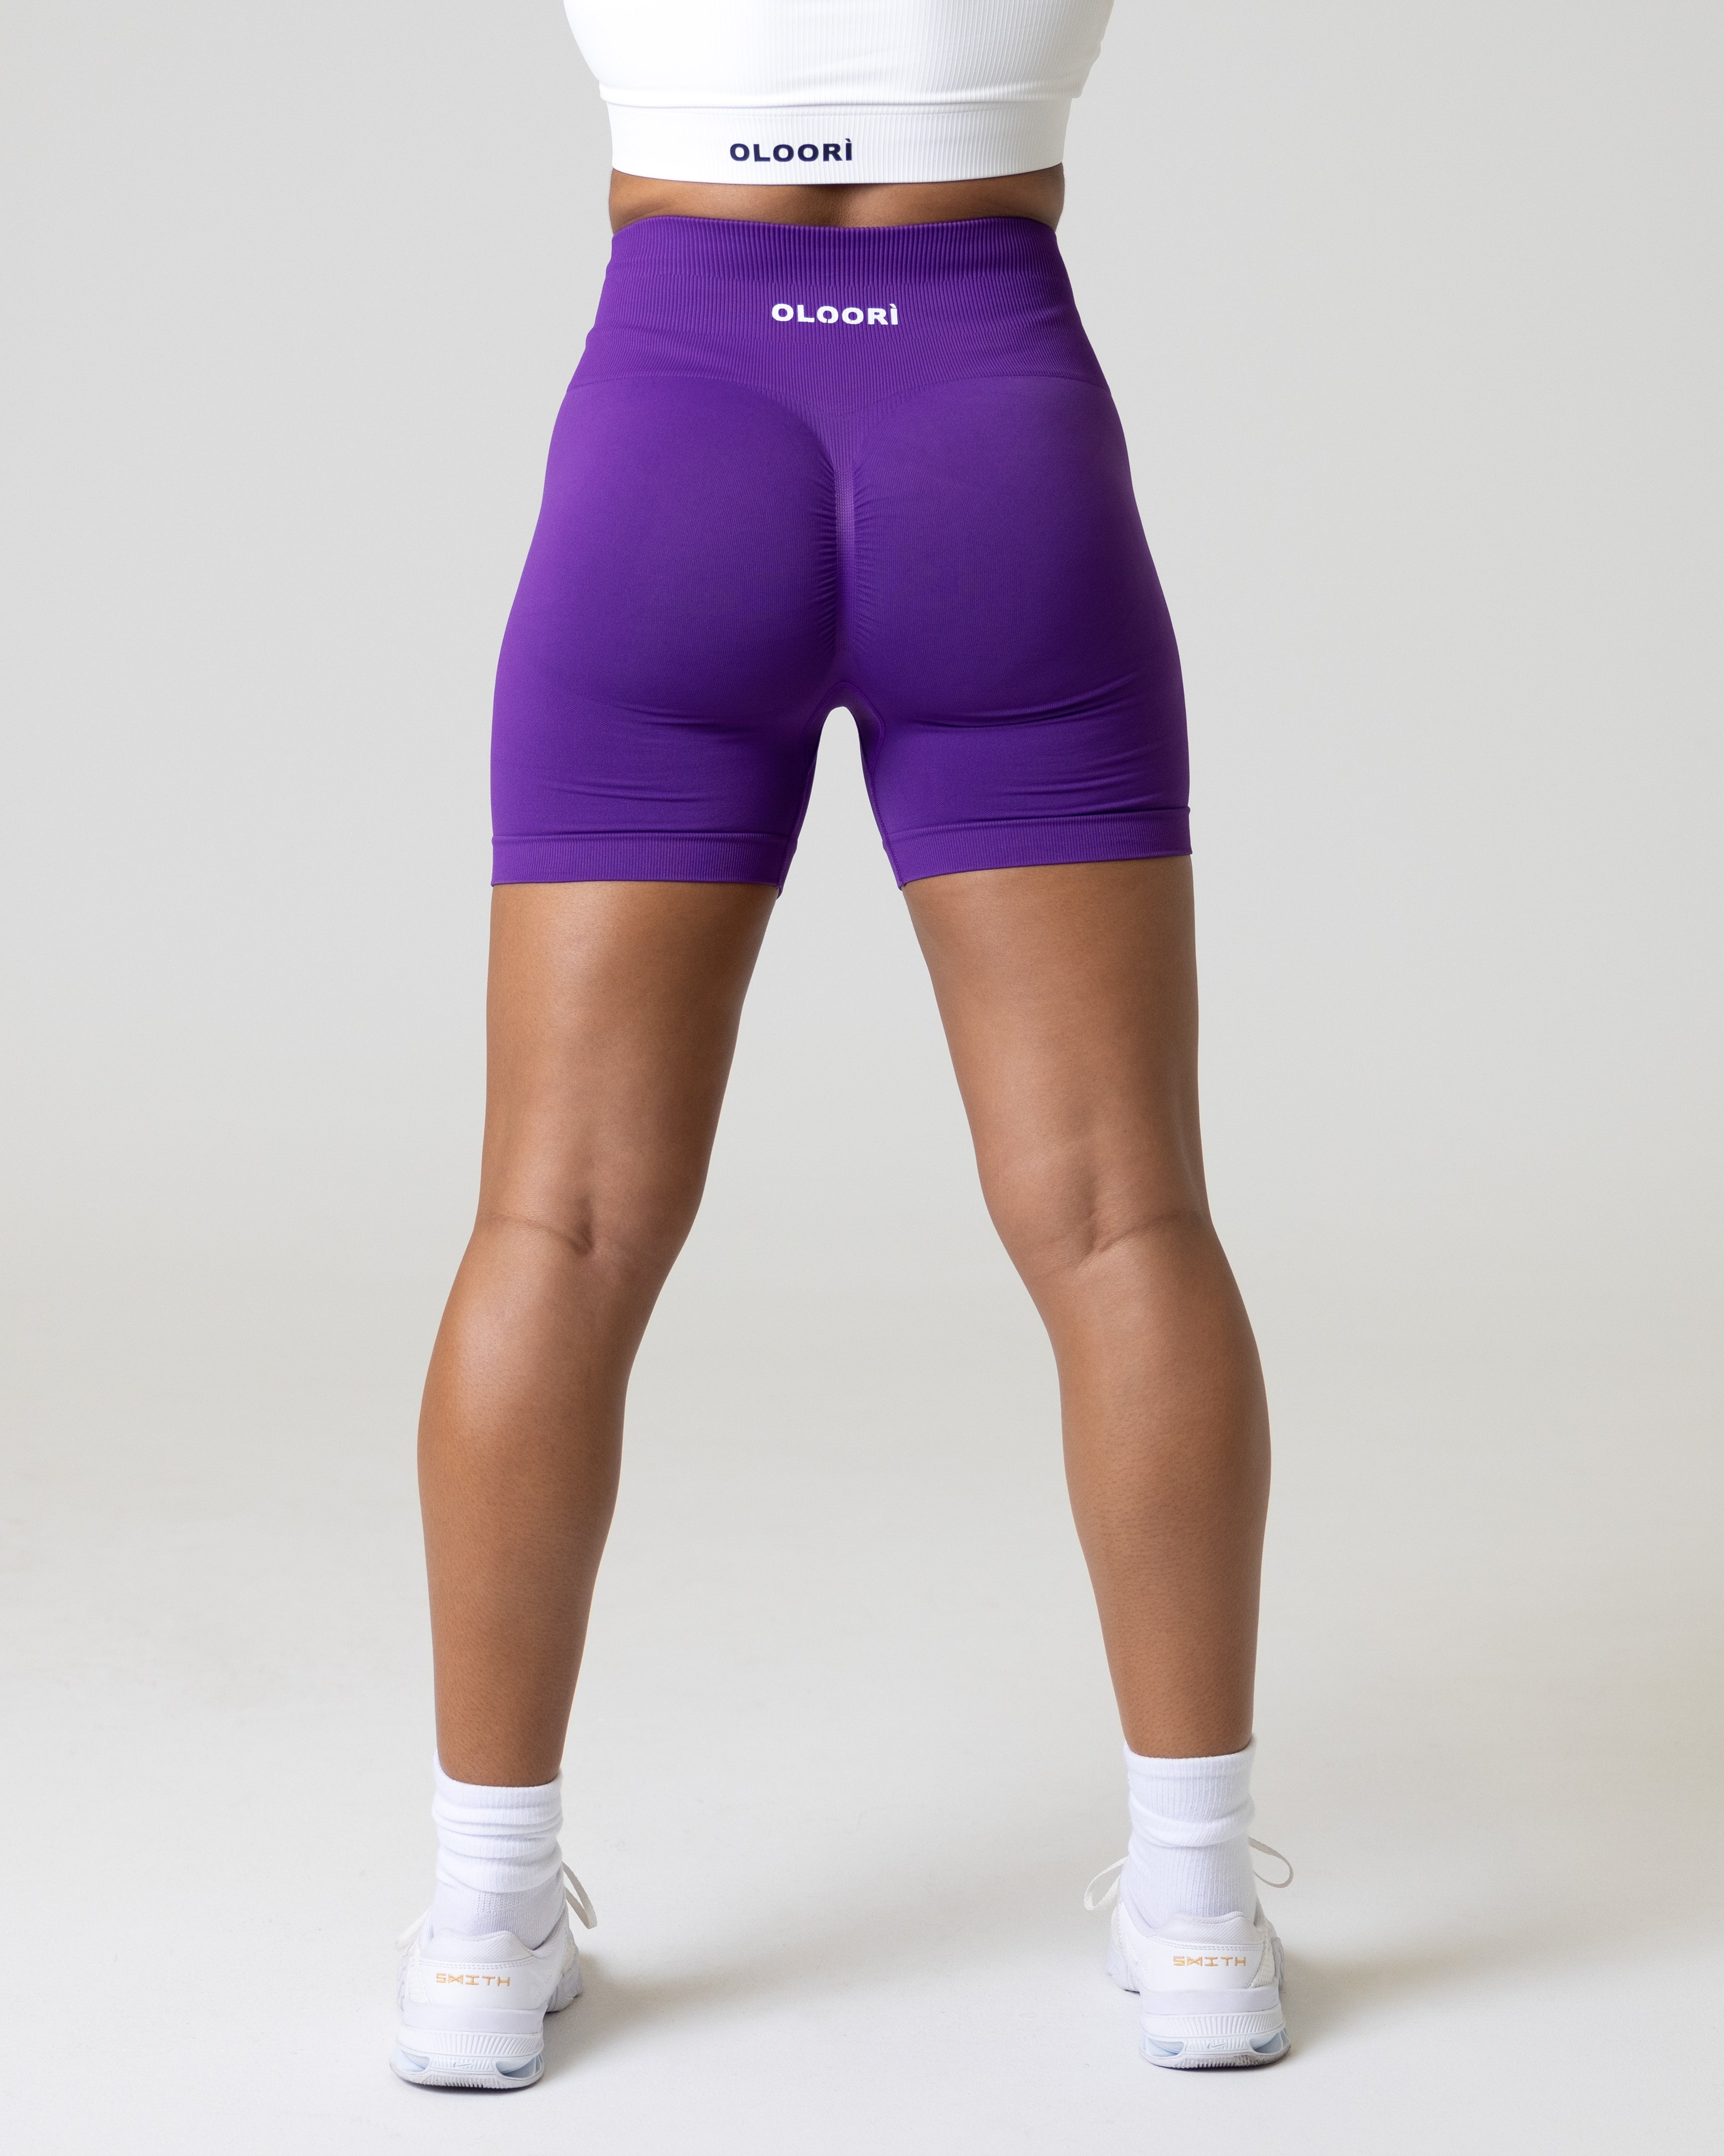 A woman wearing women's gym workout shorts